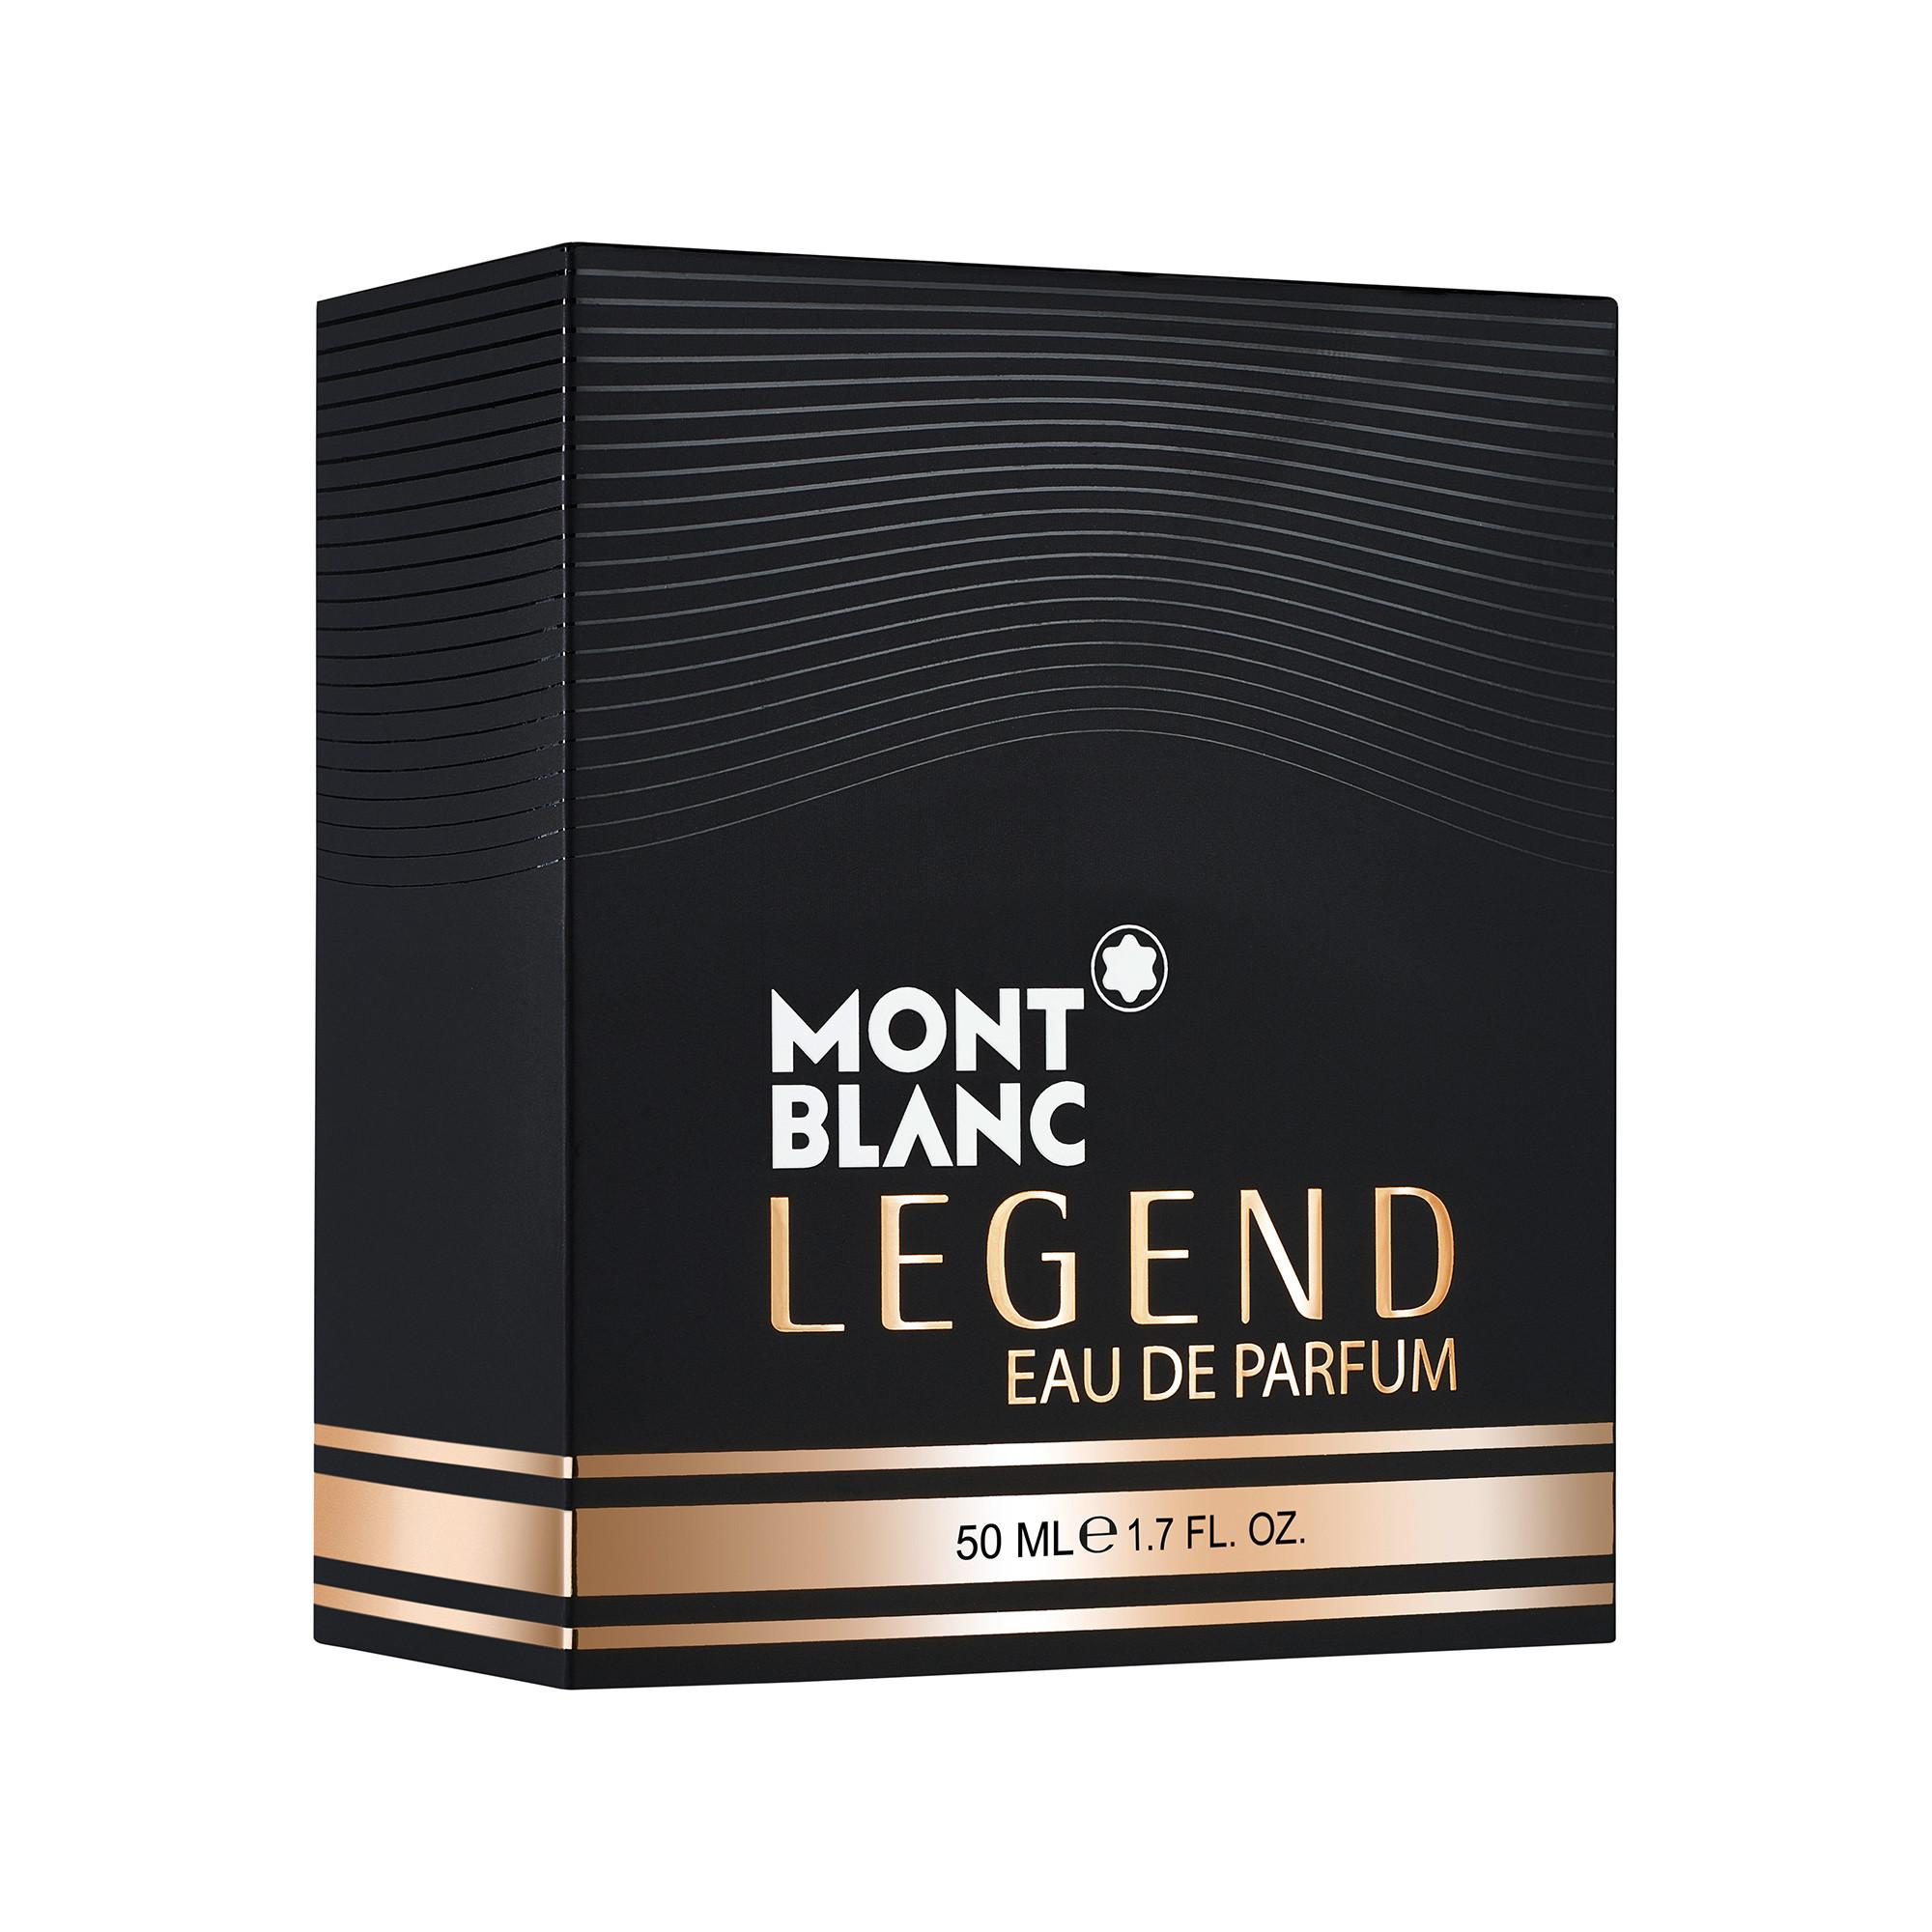 MONTBLANC Legend Eau de Parfum 